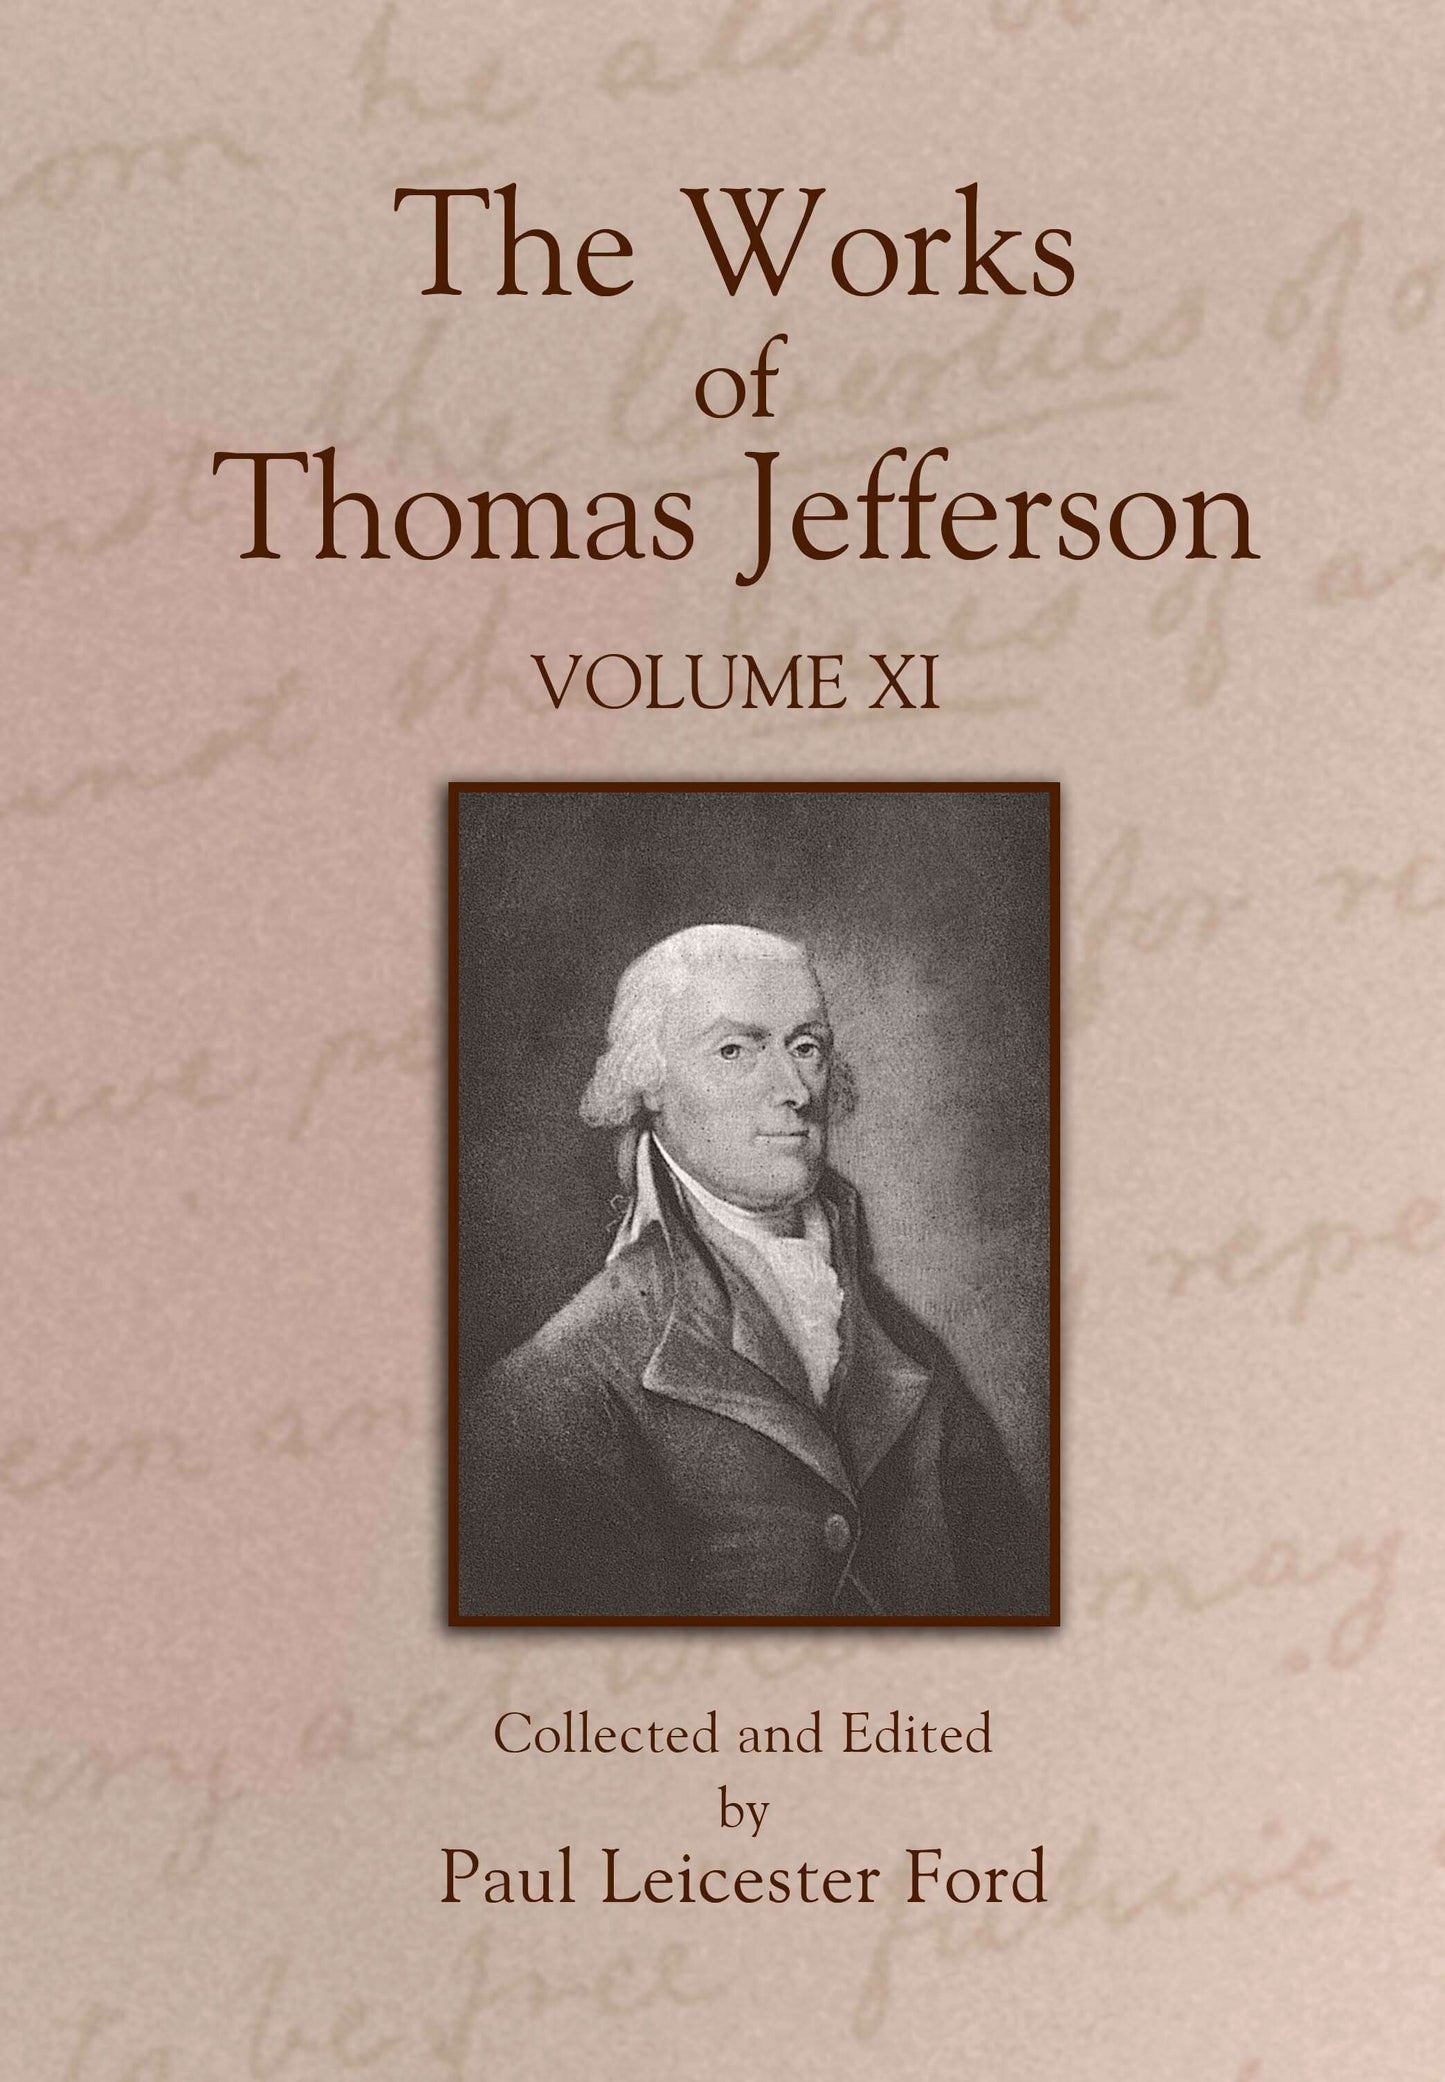 The Works of Thomas Jefferson: Volume XI